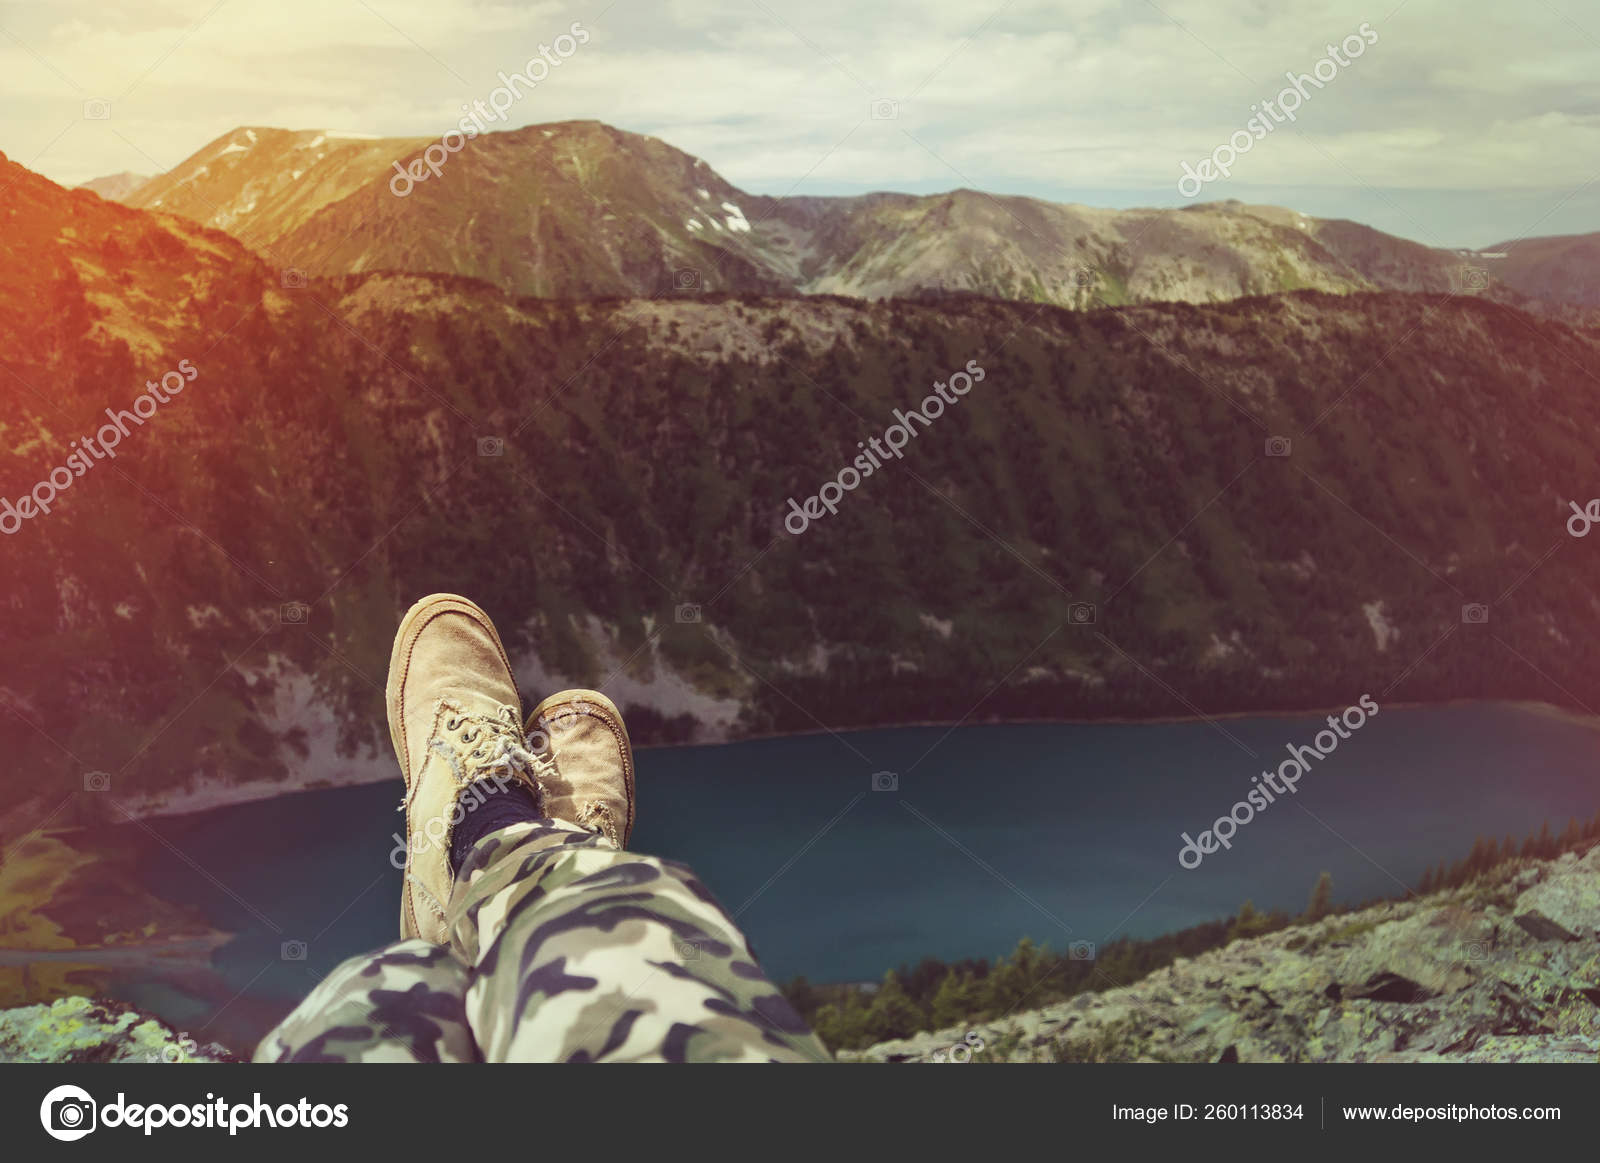 脚自拍照旅行放松与湖和山观背景徒步旅行概念夏日激情假期探险户外旅行的生活方式 图库照片 C Yayimages